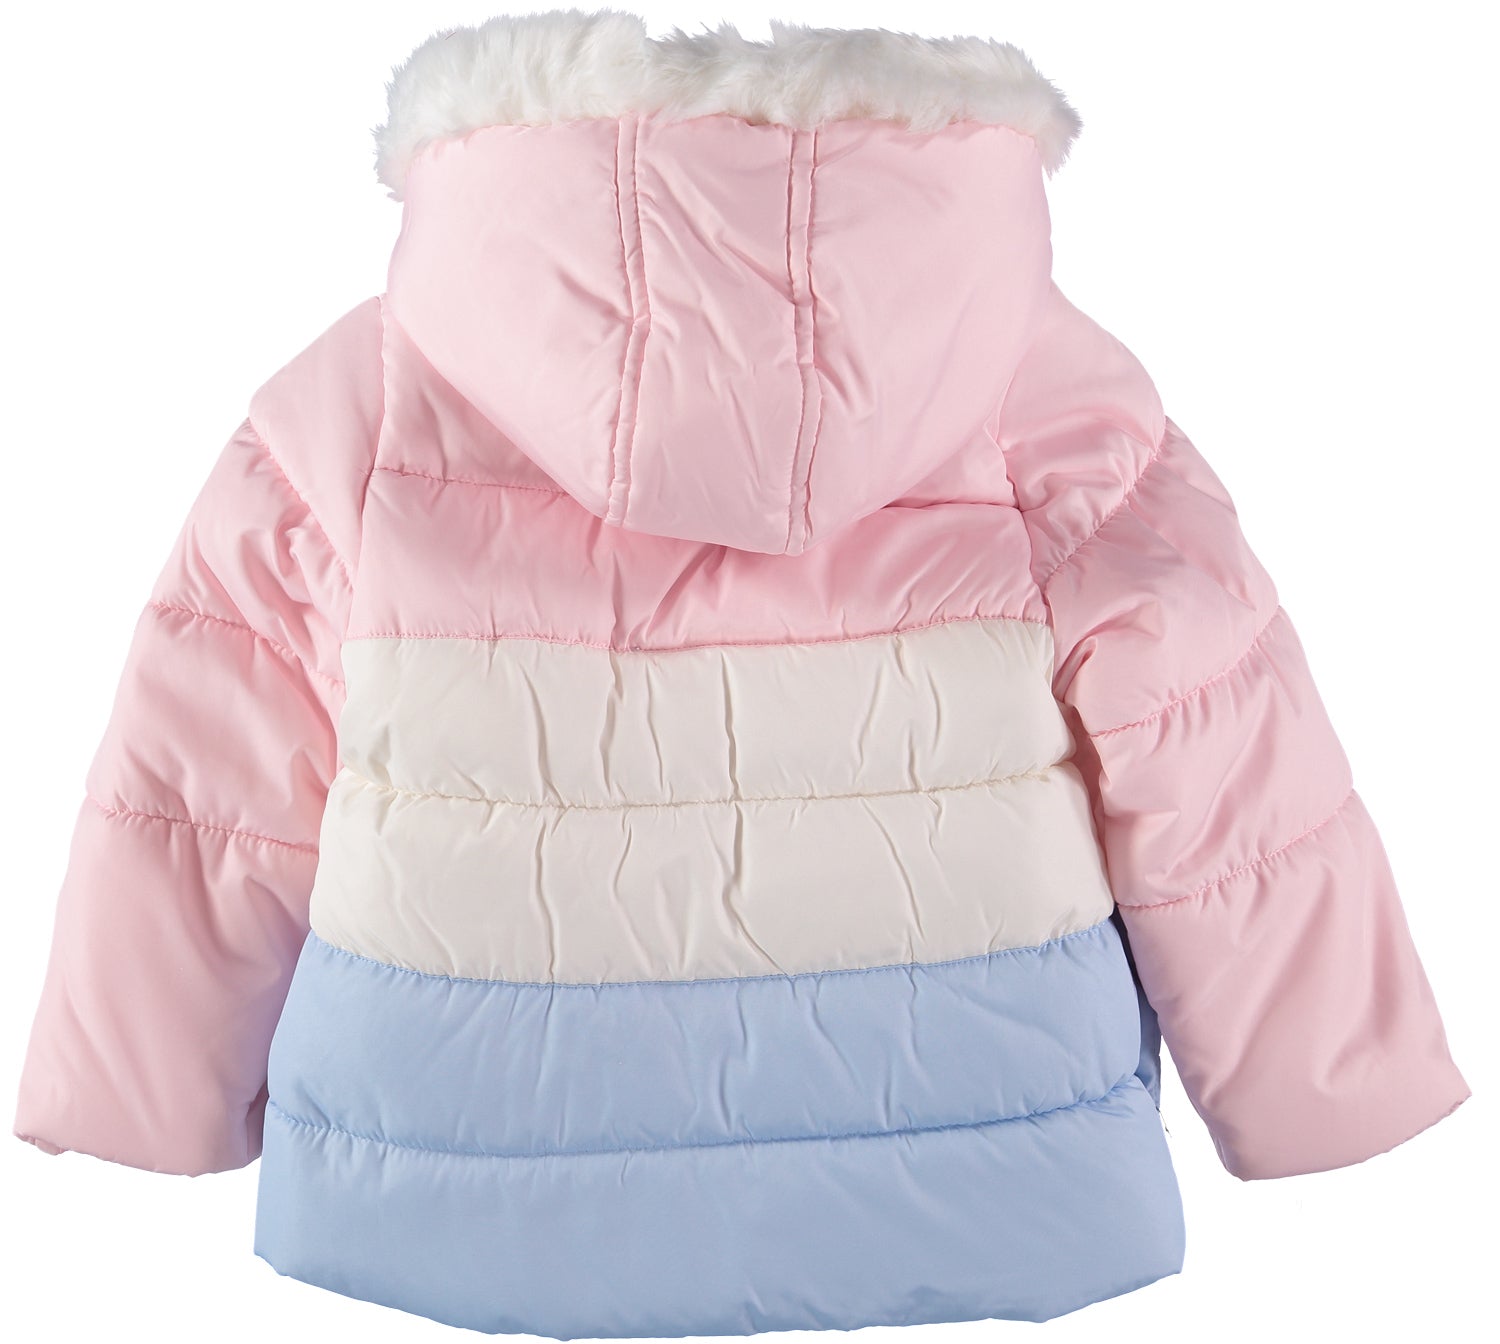 Carters Girls 12-24 Months Colorblock Snowsuit